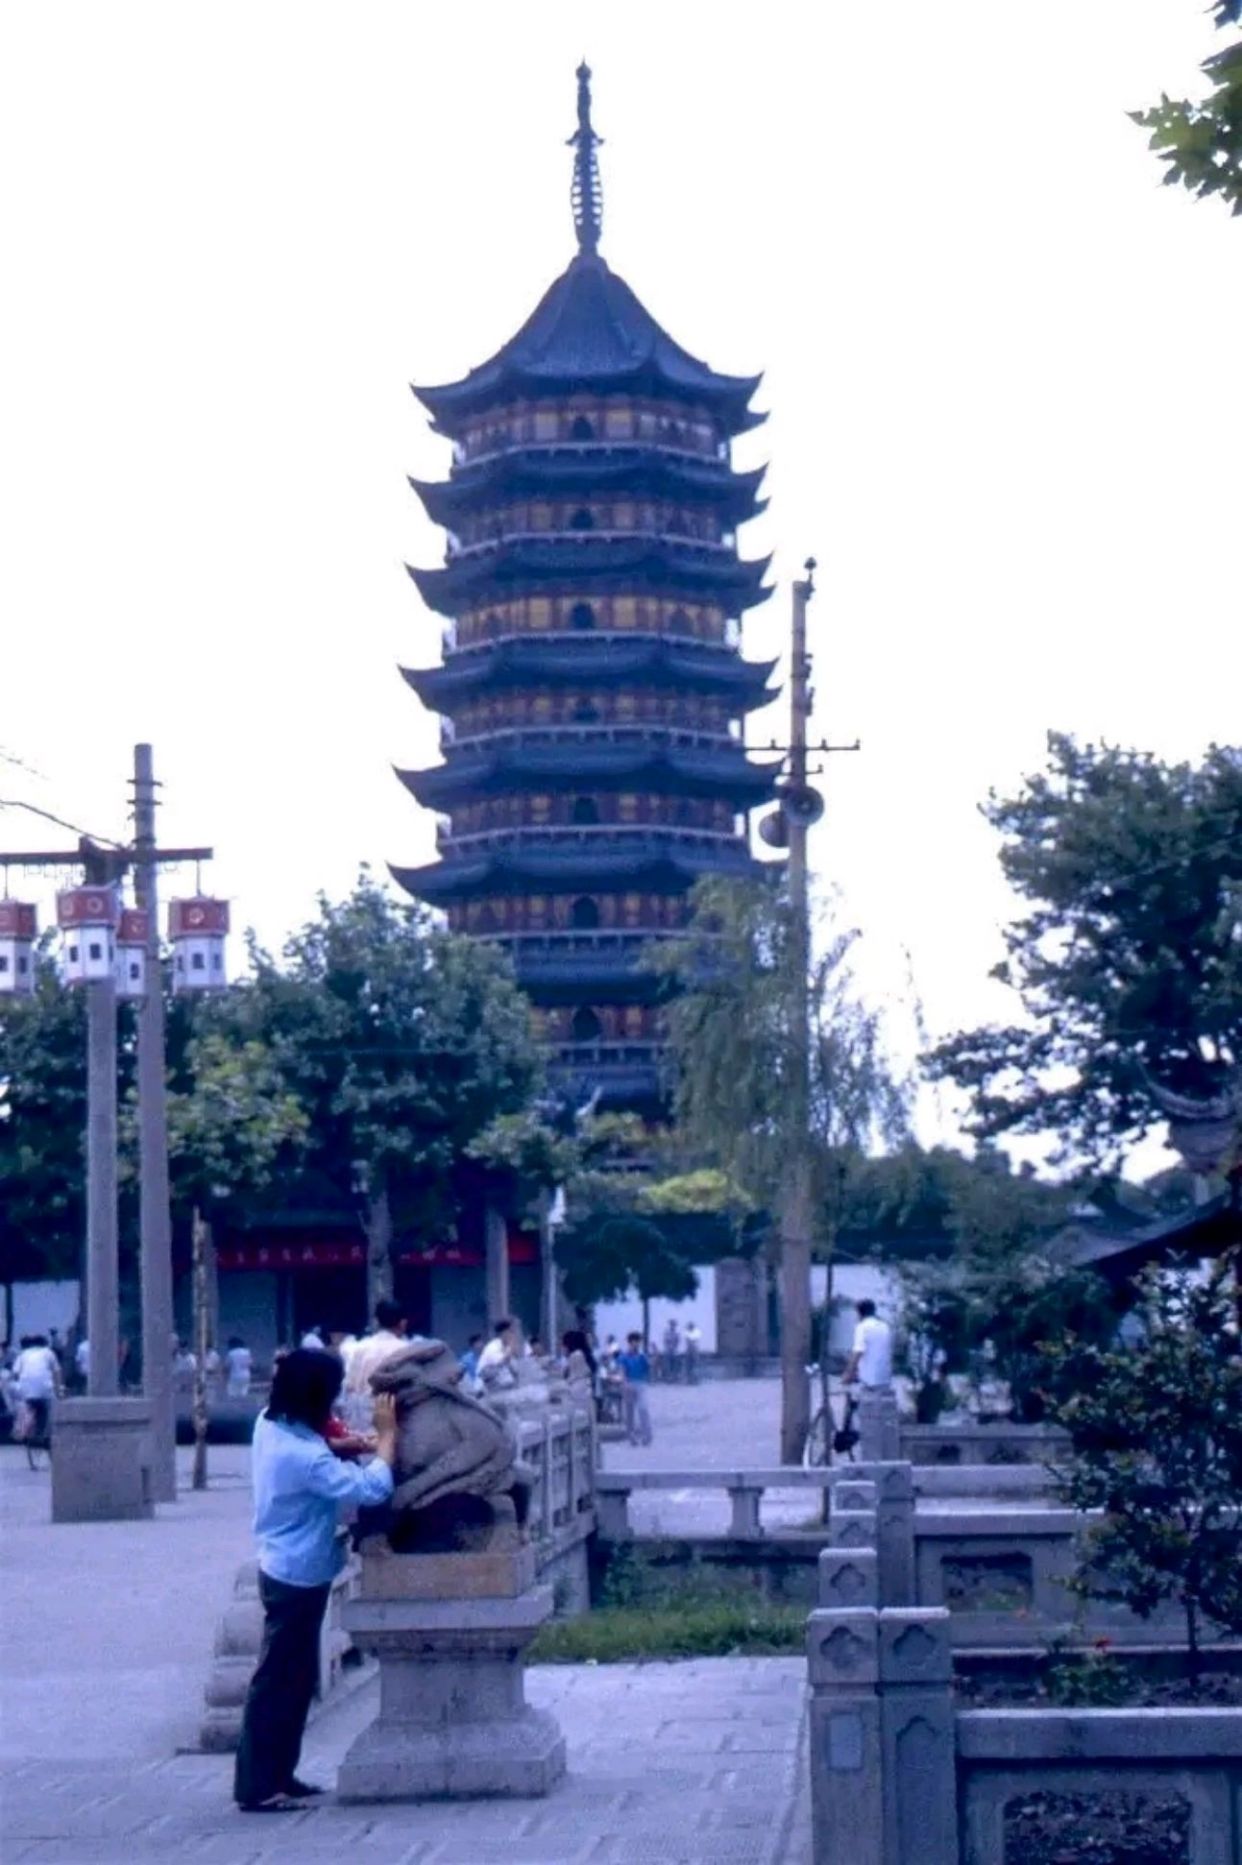 80年代江苏苏州老照片,难得一见的水乡美景,看下有多迷人?